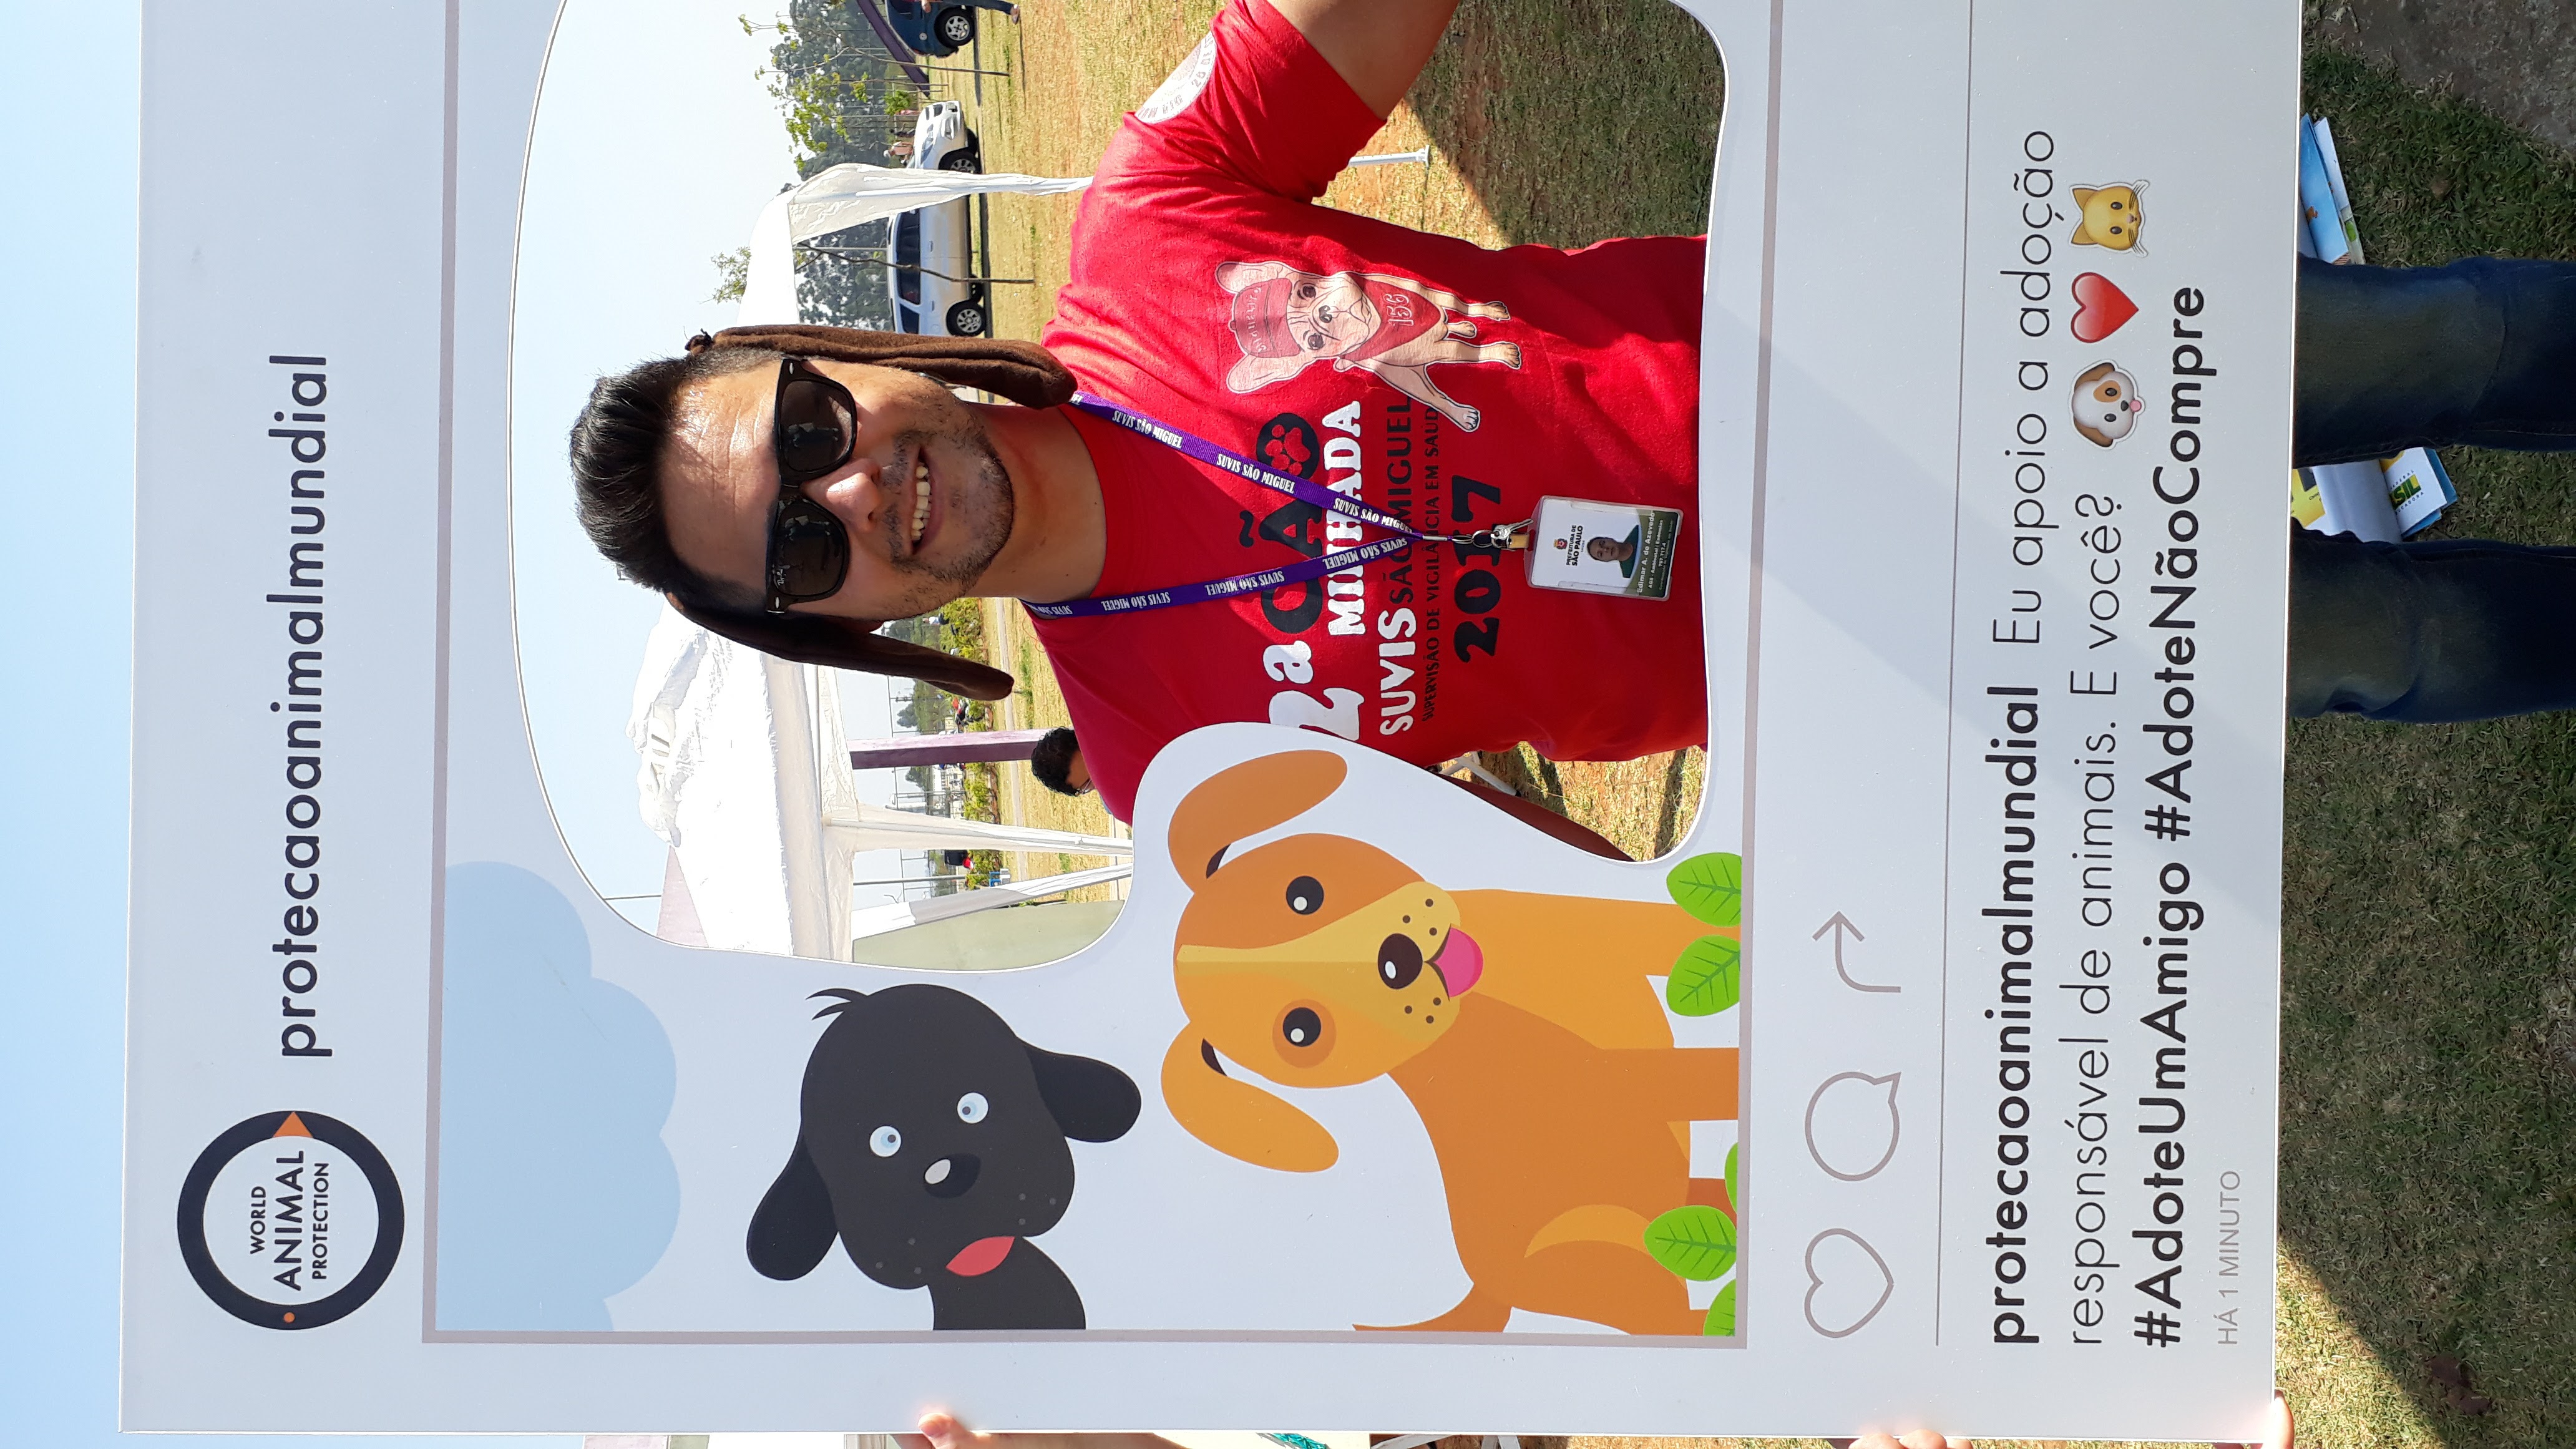 A foto mostra Edimar durante a Cãominhada de 2017; ele é um homem de cabelos escuros, usa óculos de sol e uma camiseta vermelha do evento e está com orelhas de cachorro, posando dentro de uma moldura que imita um post do aplicativo Instagram, onde se lê frases de incentivo à adoção de animais 